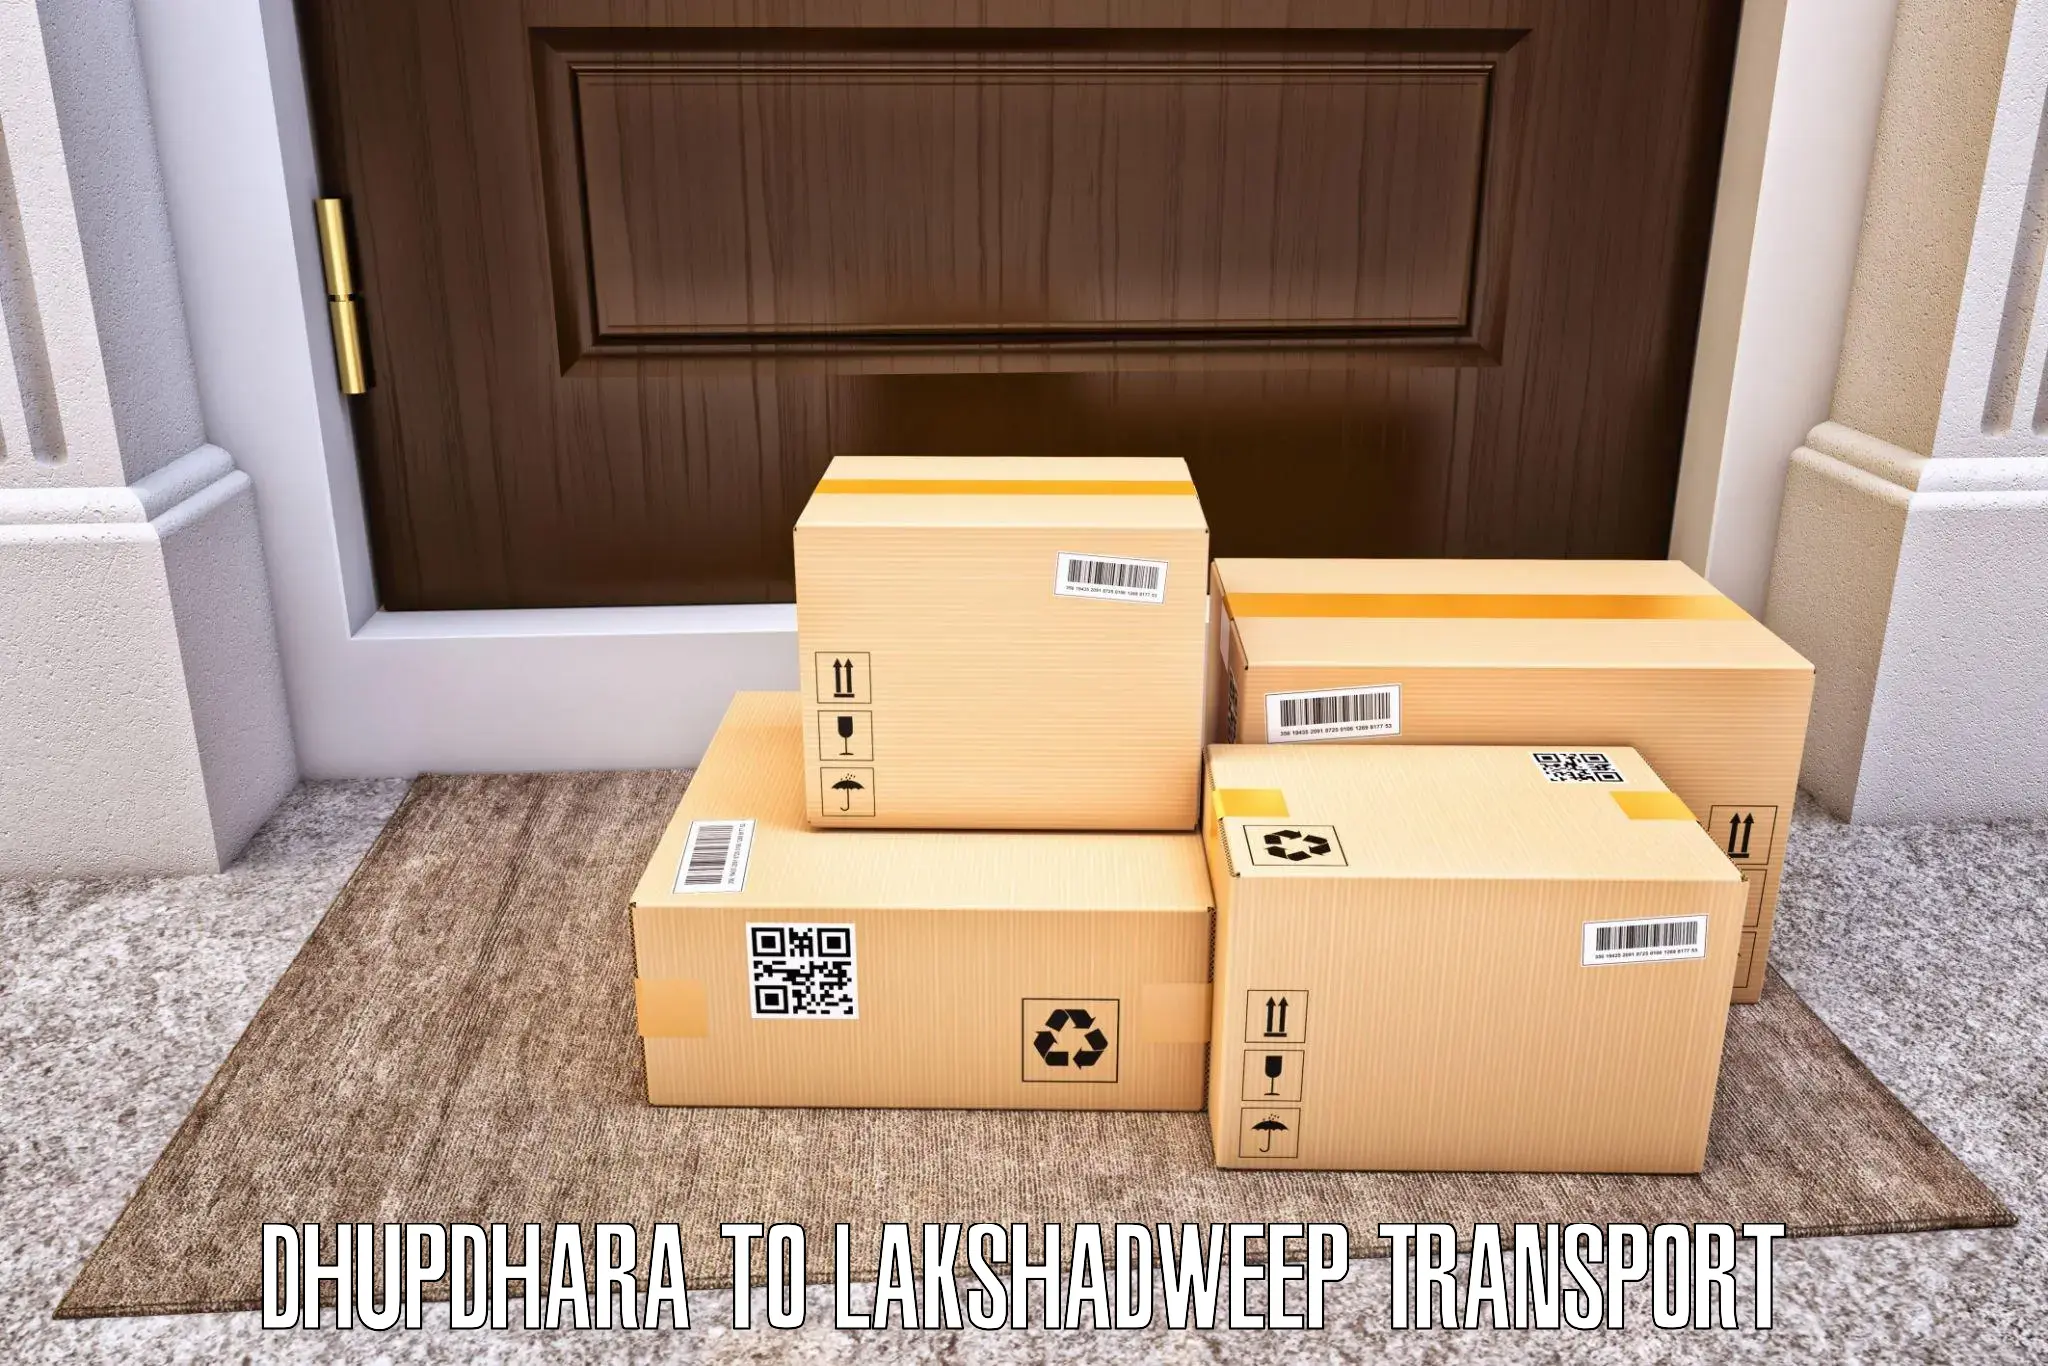 Cargo transport services Dhupdhara to Lakshadweep